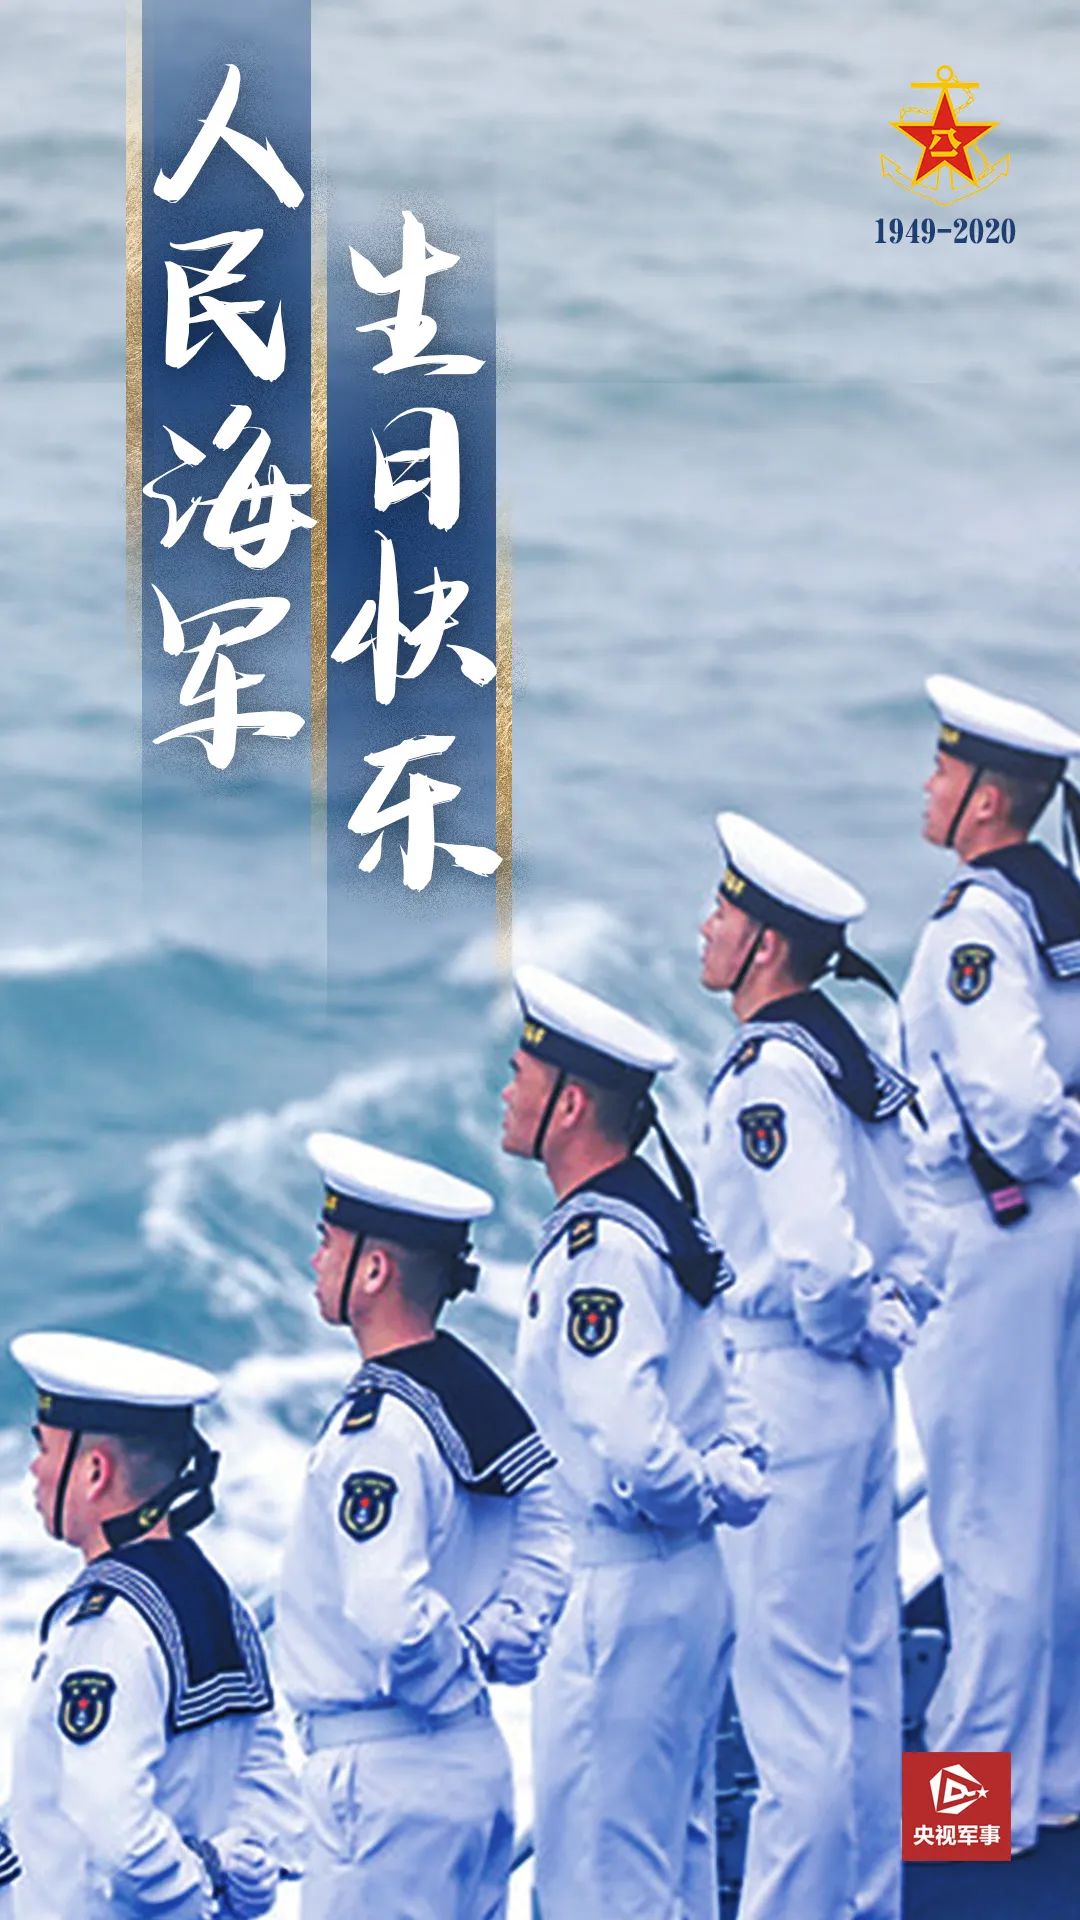 一大波高清美图！70年了，今天我们为他们而转发！致敬日益强大的中国海军！